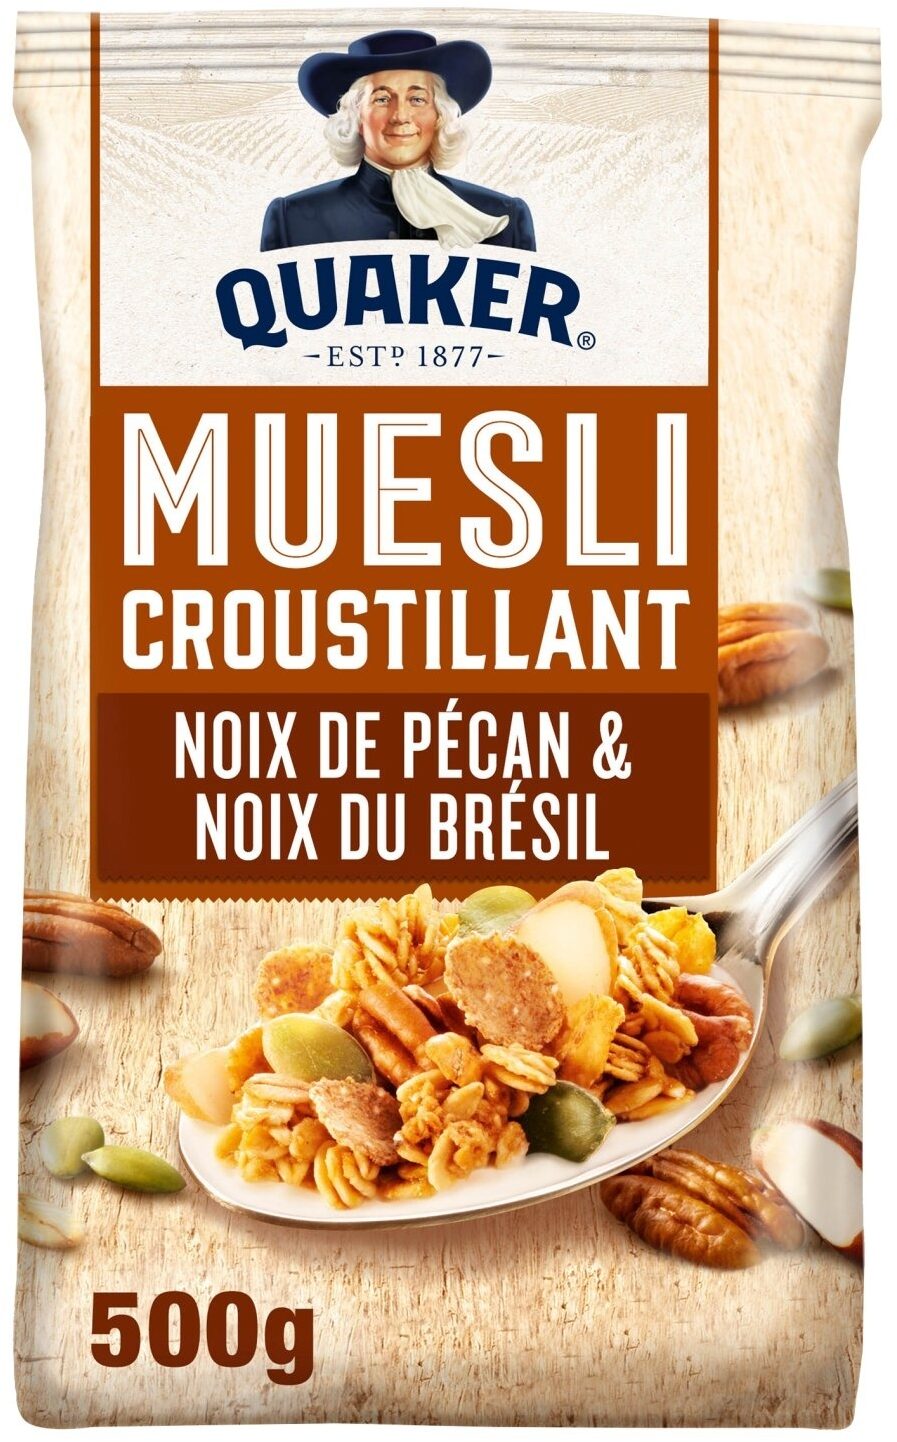 Quaker Muesli Croustillant Noix de pécan & noix du Brésil - Product - fr